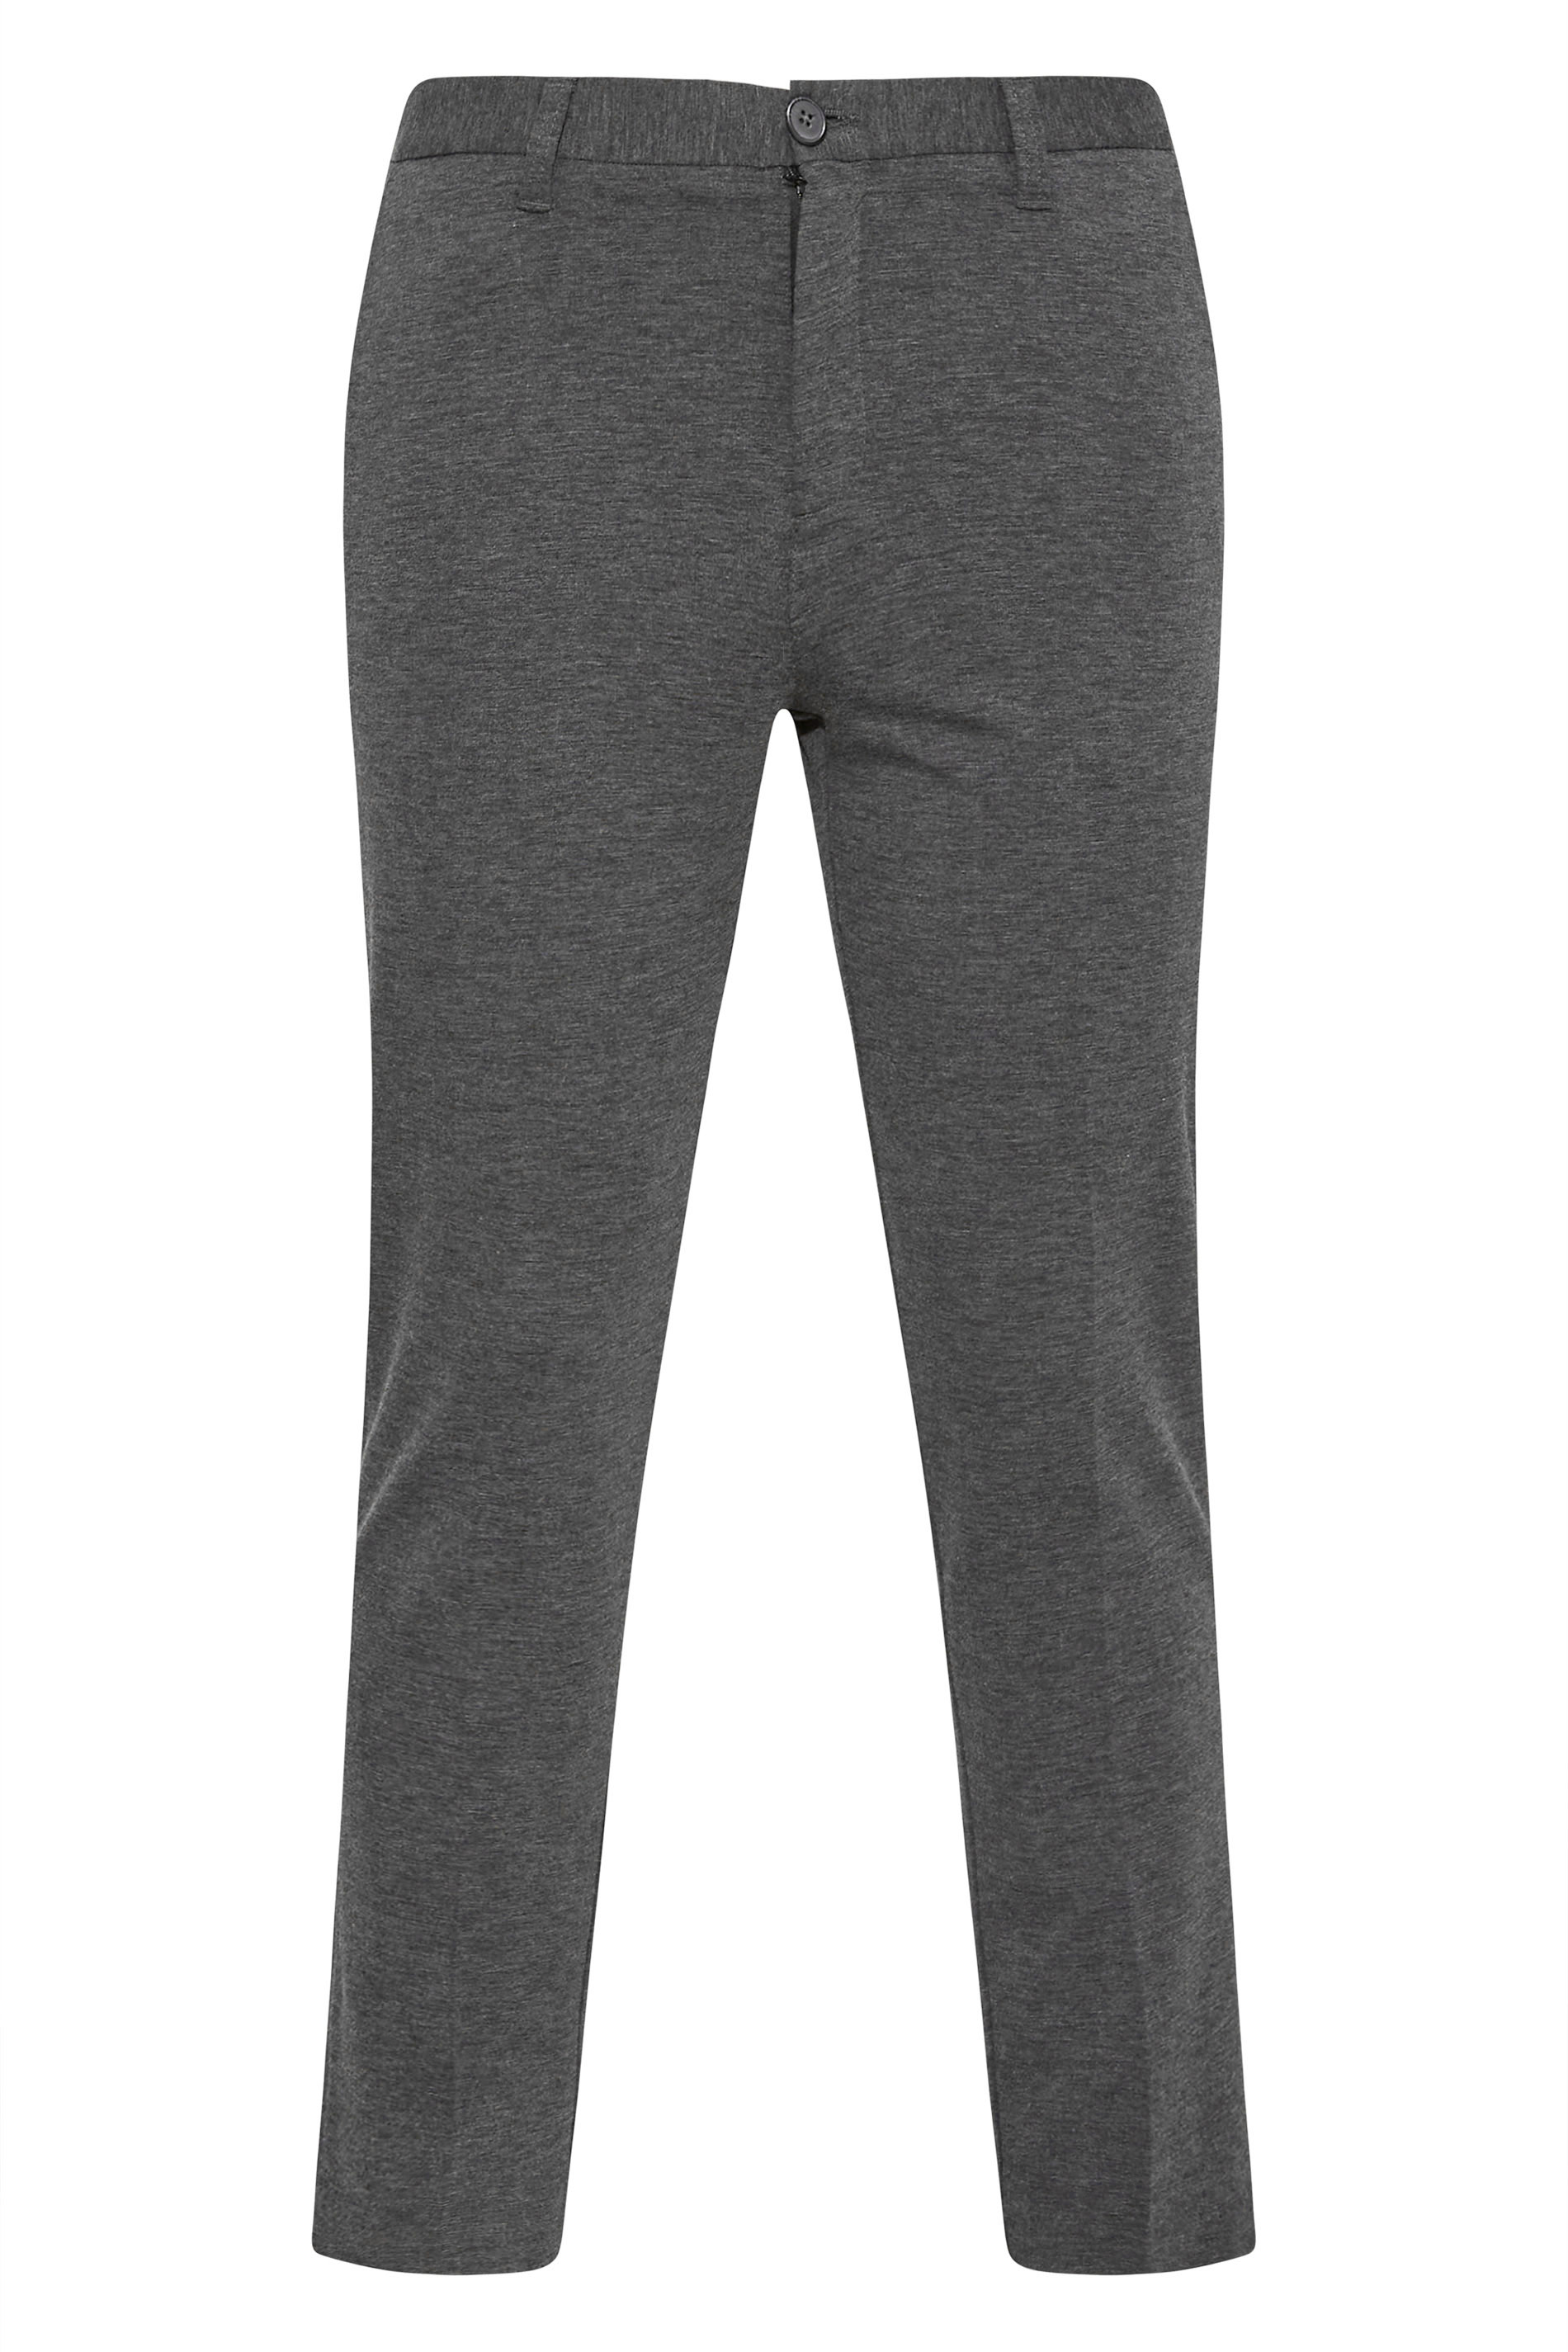 BadRhino Charcoal Grey Stretch Trousers | BadRhino 2